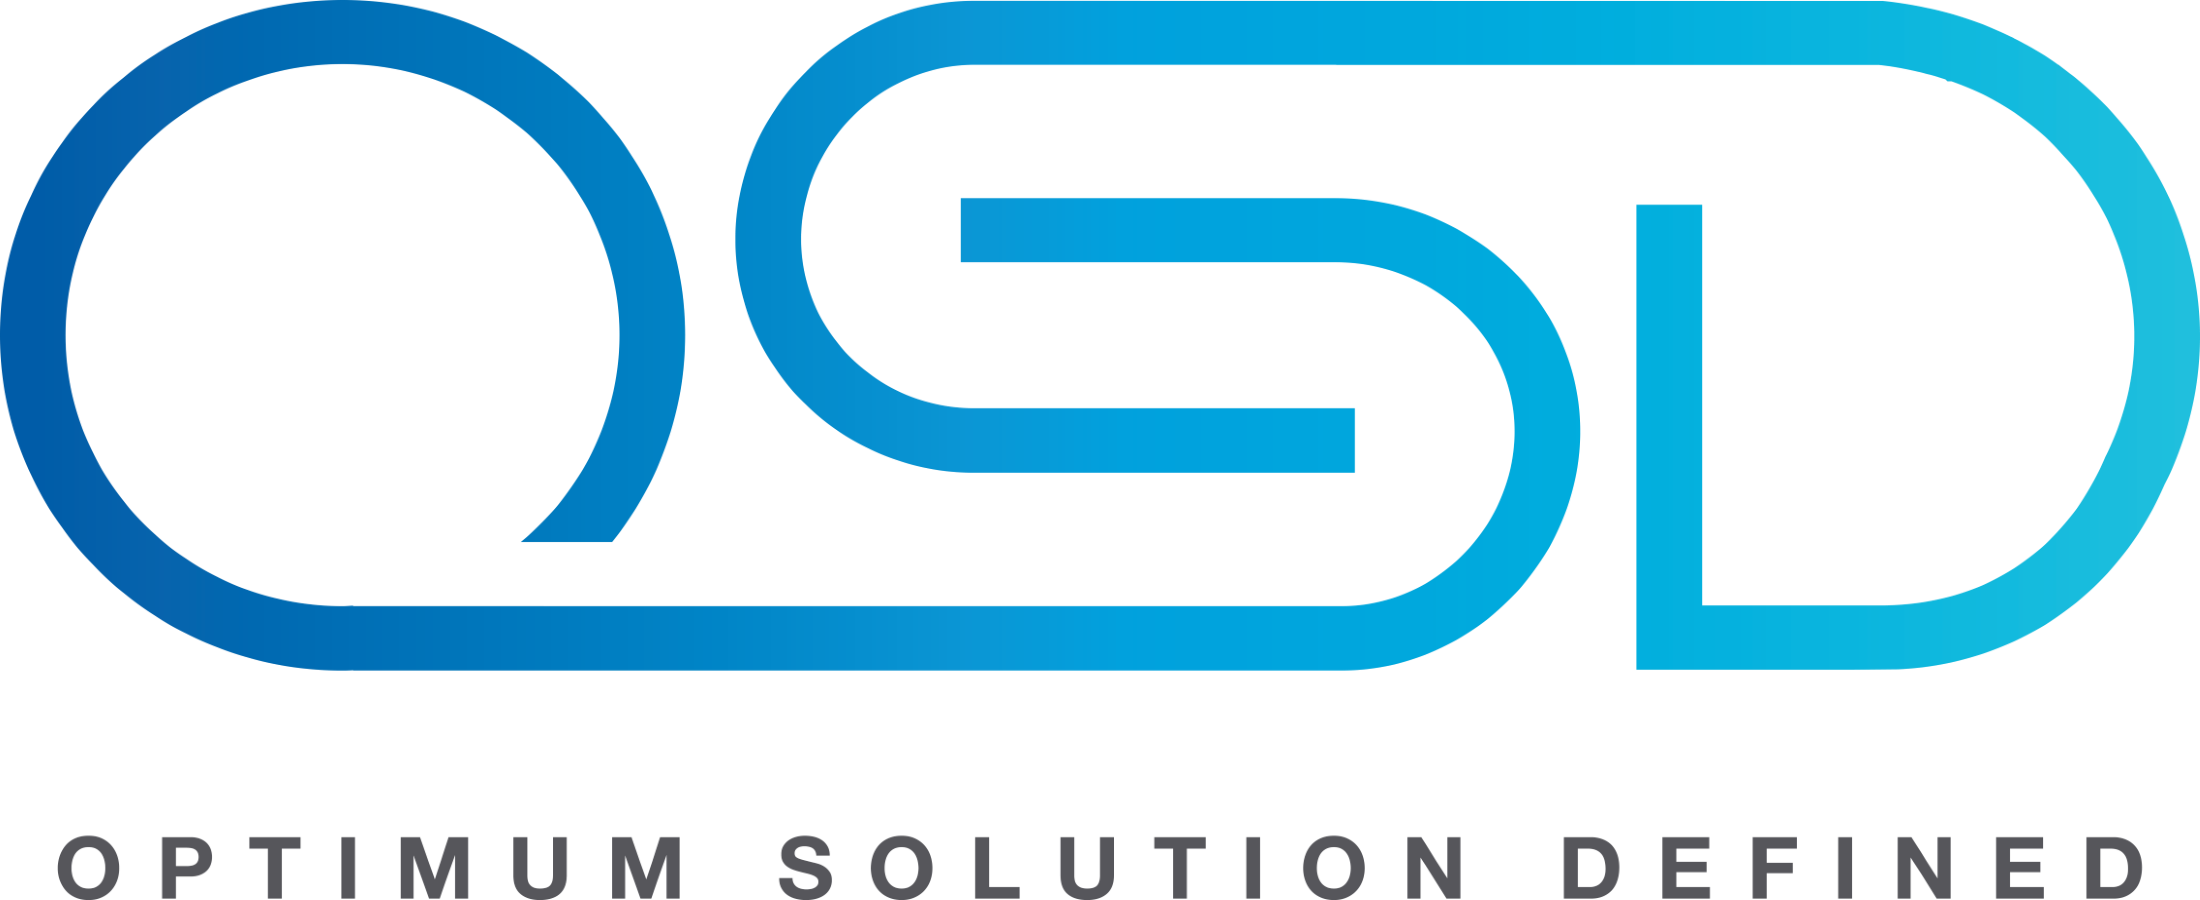 OSD Company Limited